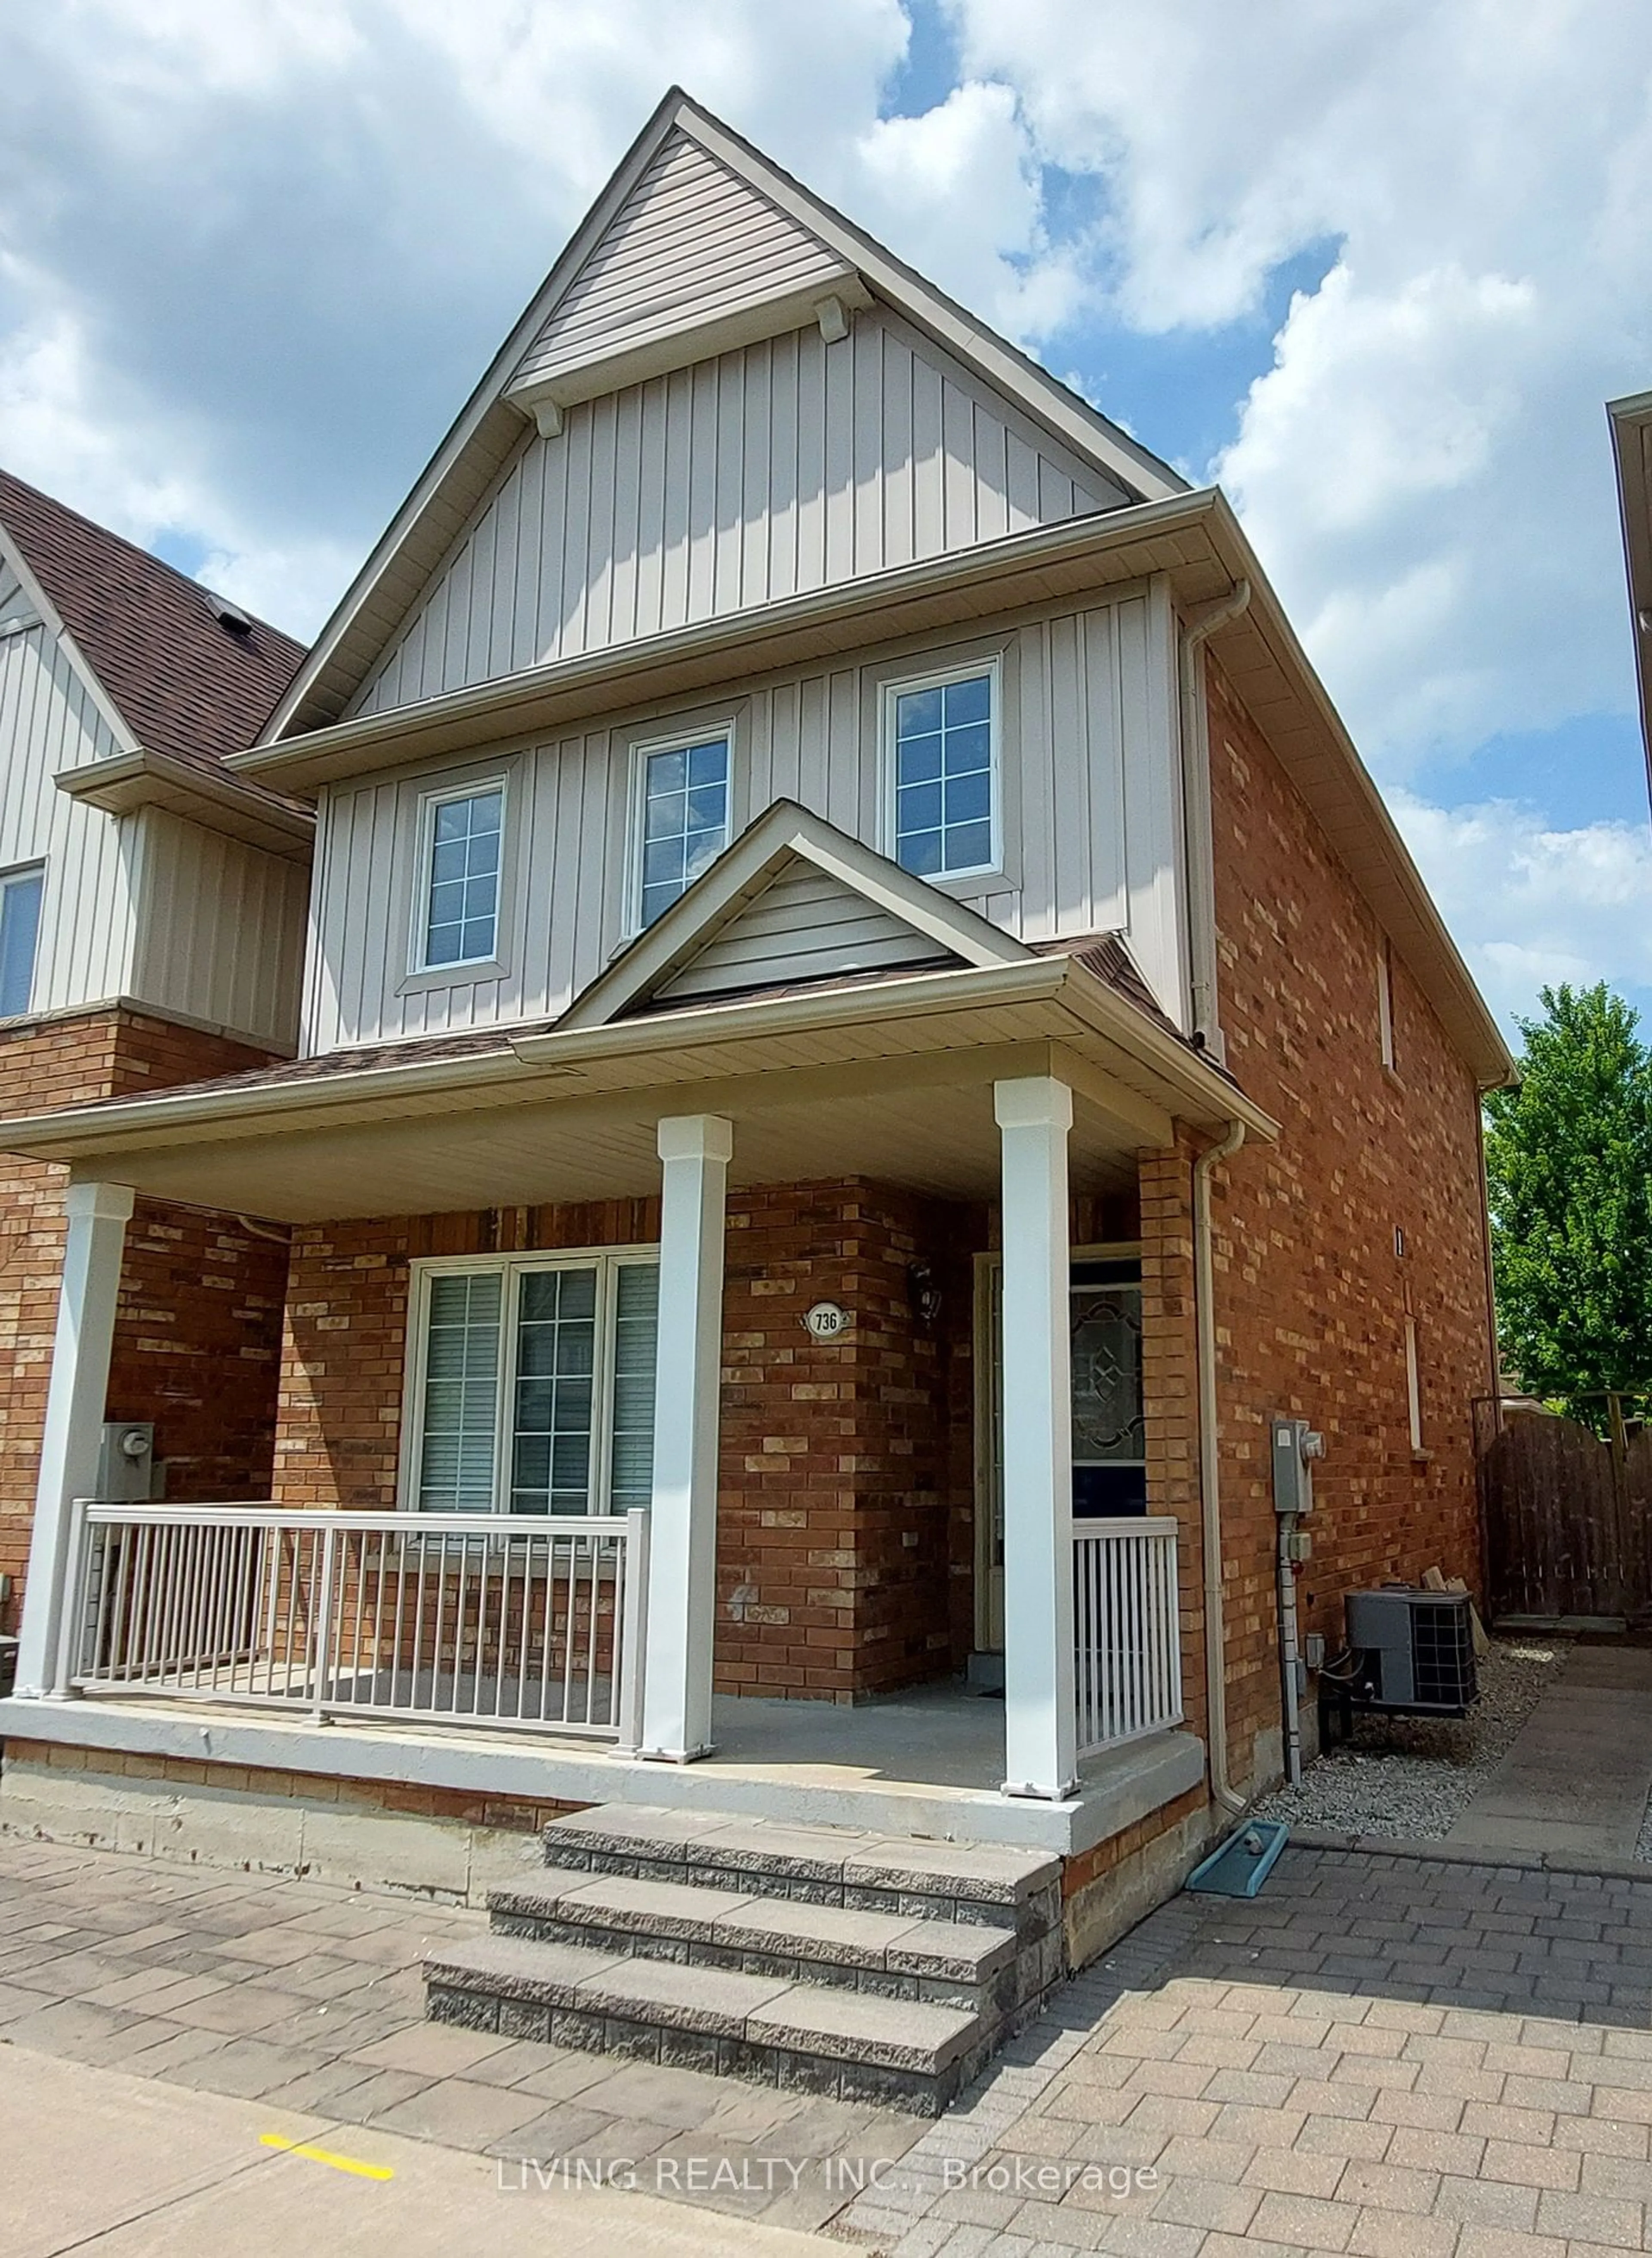 Home with brick exterior material for 736 Bur Oak Ave, Markham Ontario L6E 1J3